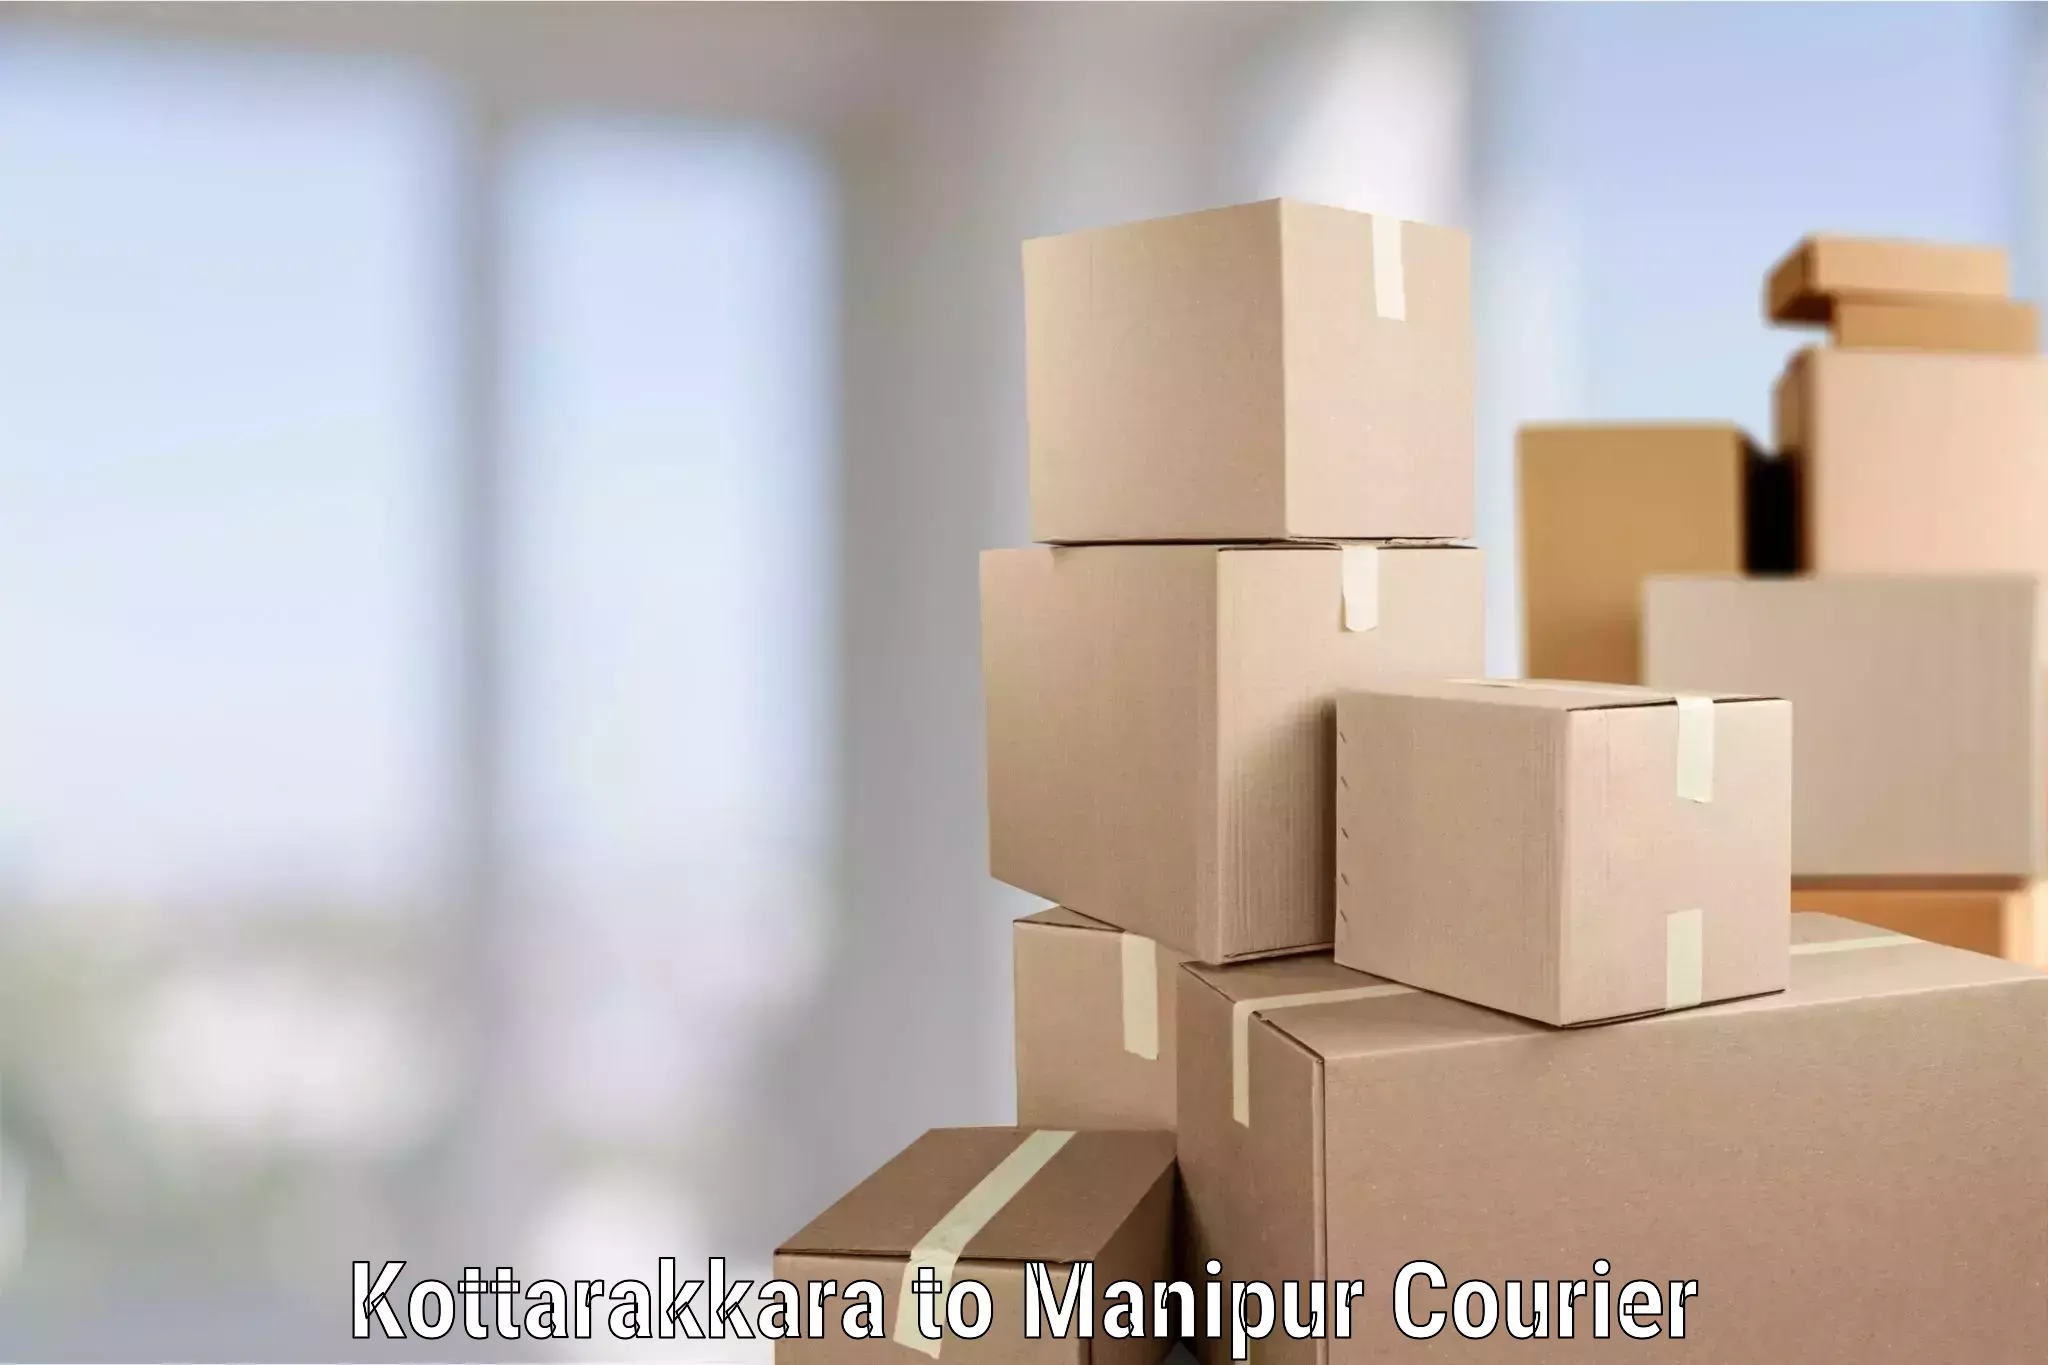 Full-service relocation Kottarakkara to Manipur